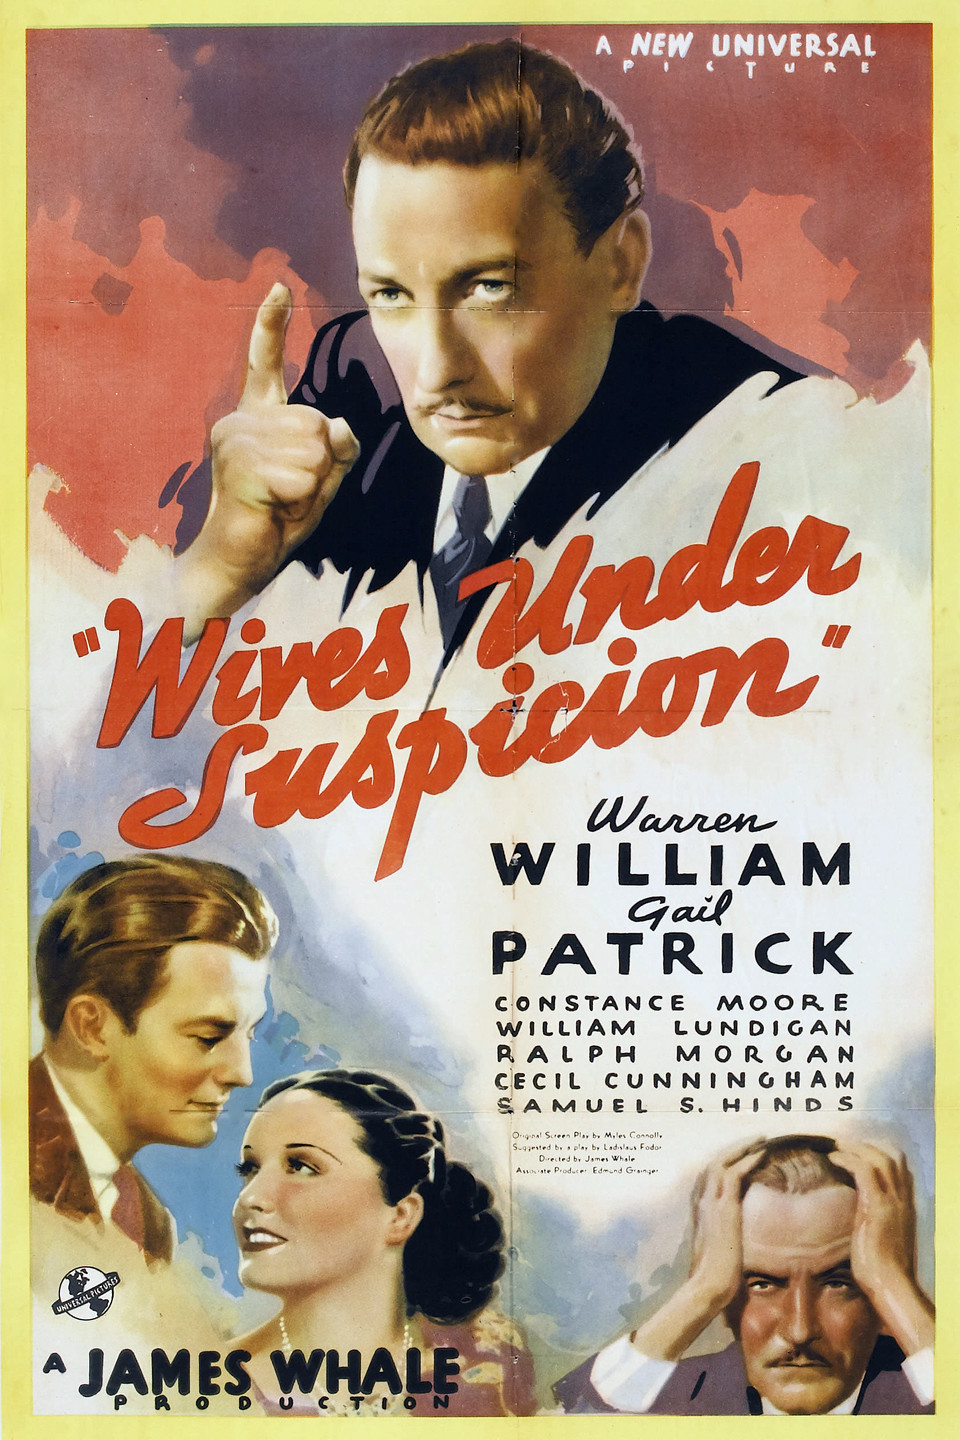 WIVES UNDER SUSPICION (1938)